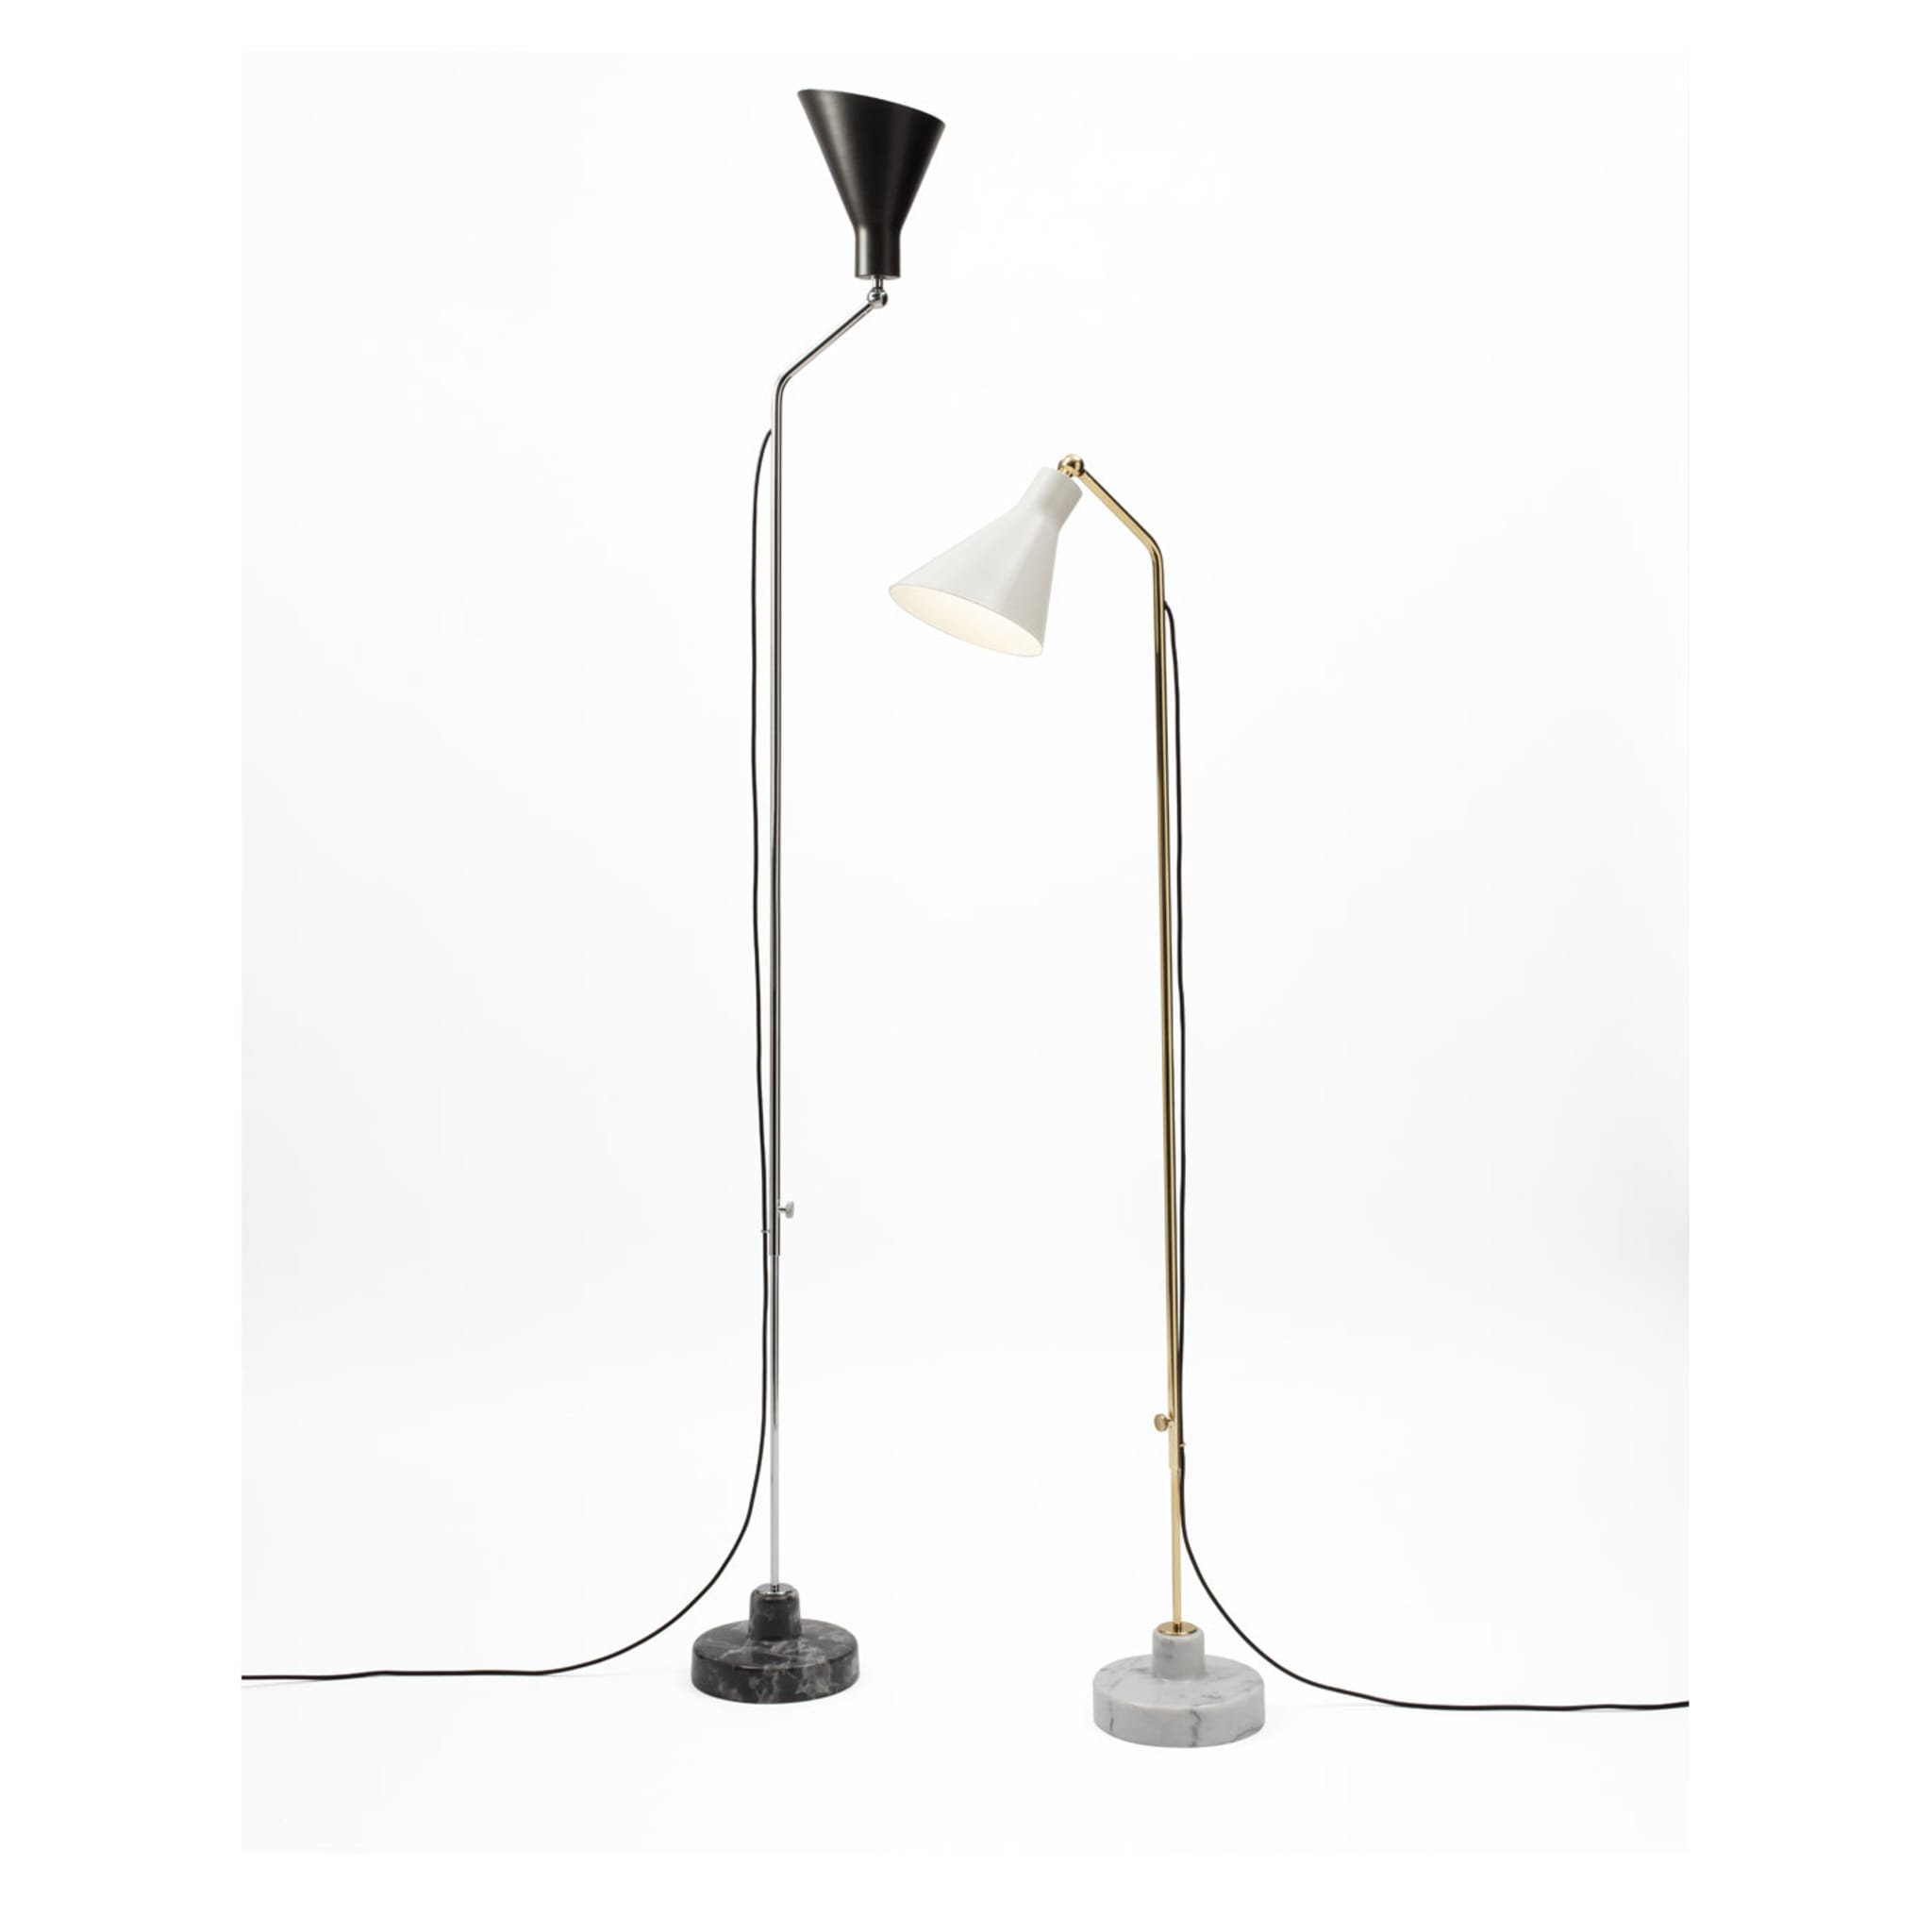 Alzabile Adjustable Lamp by Ignazio Gardella - Alternative view 2